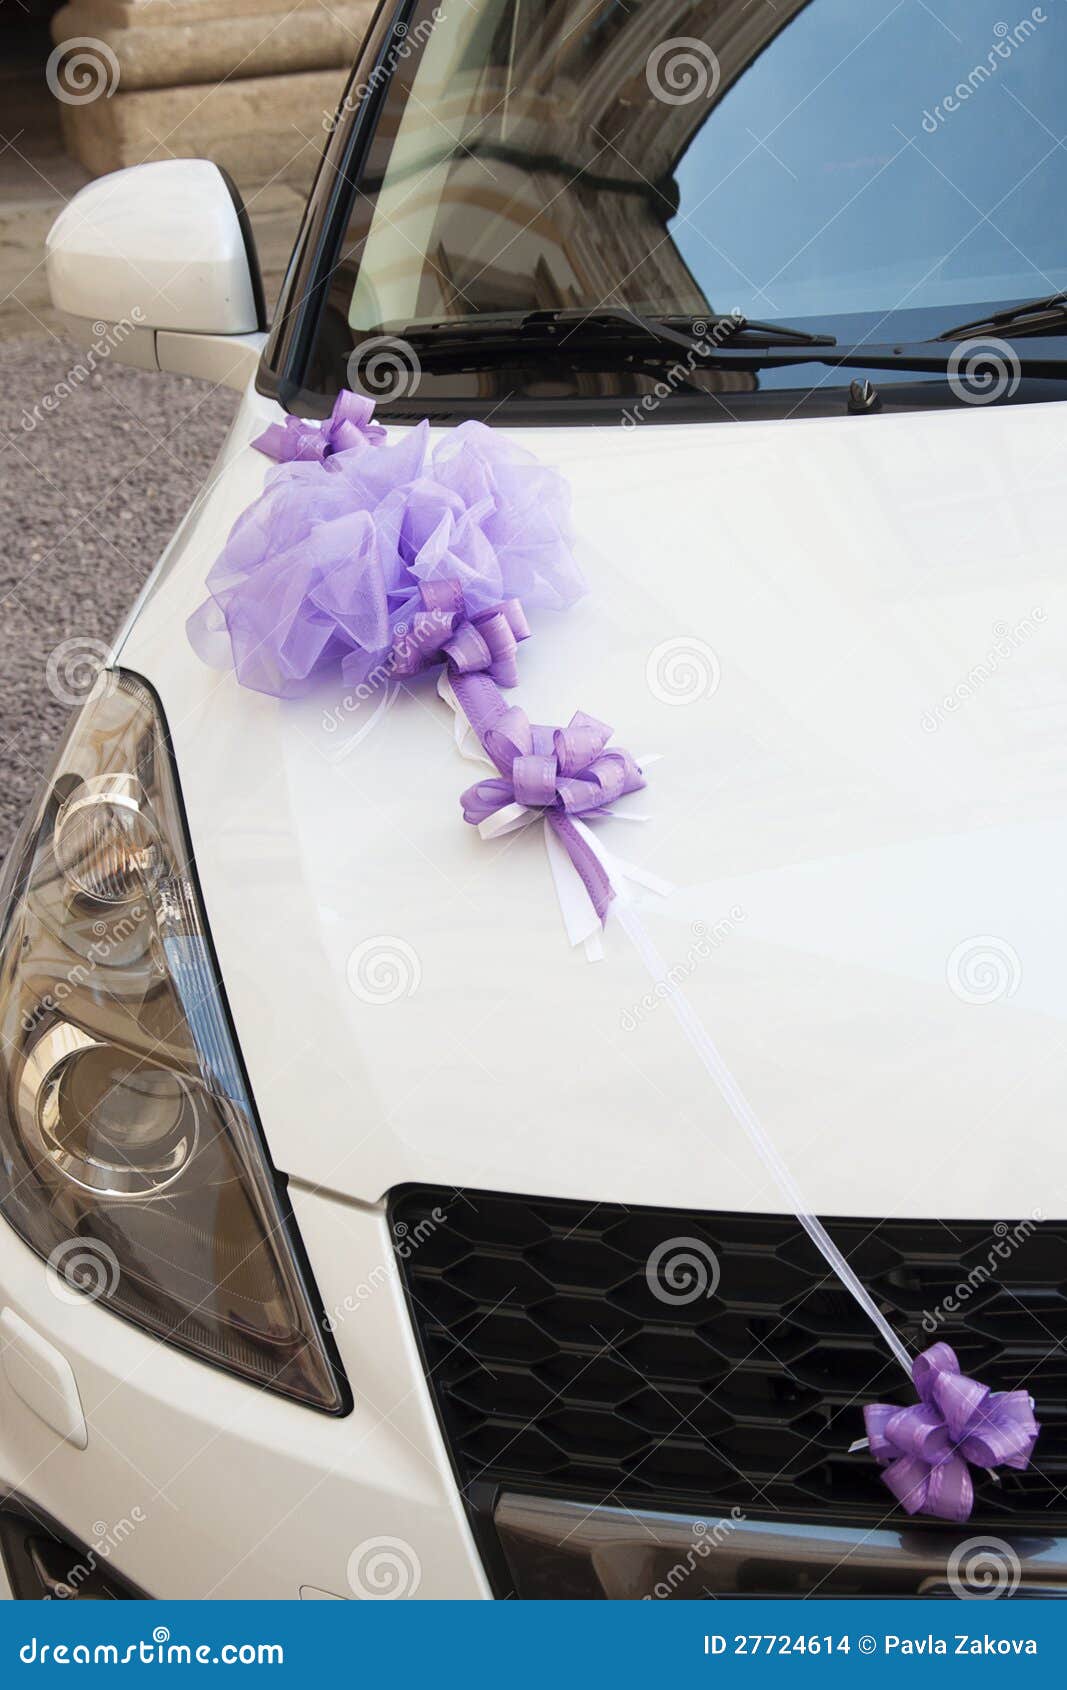 Wedding car decoration stock photo. Image of white, wedding - 27724614